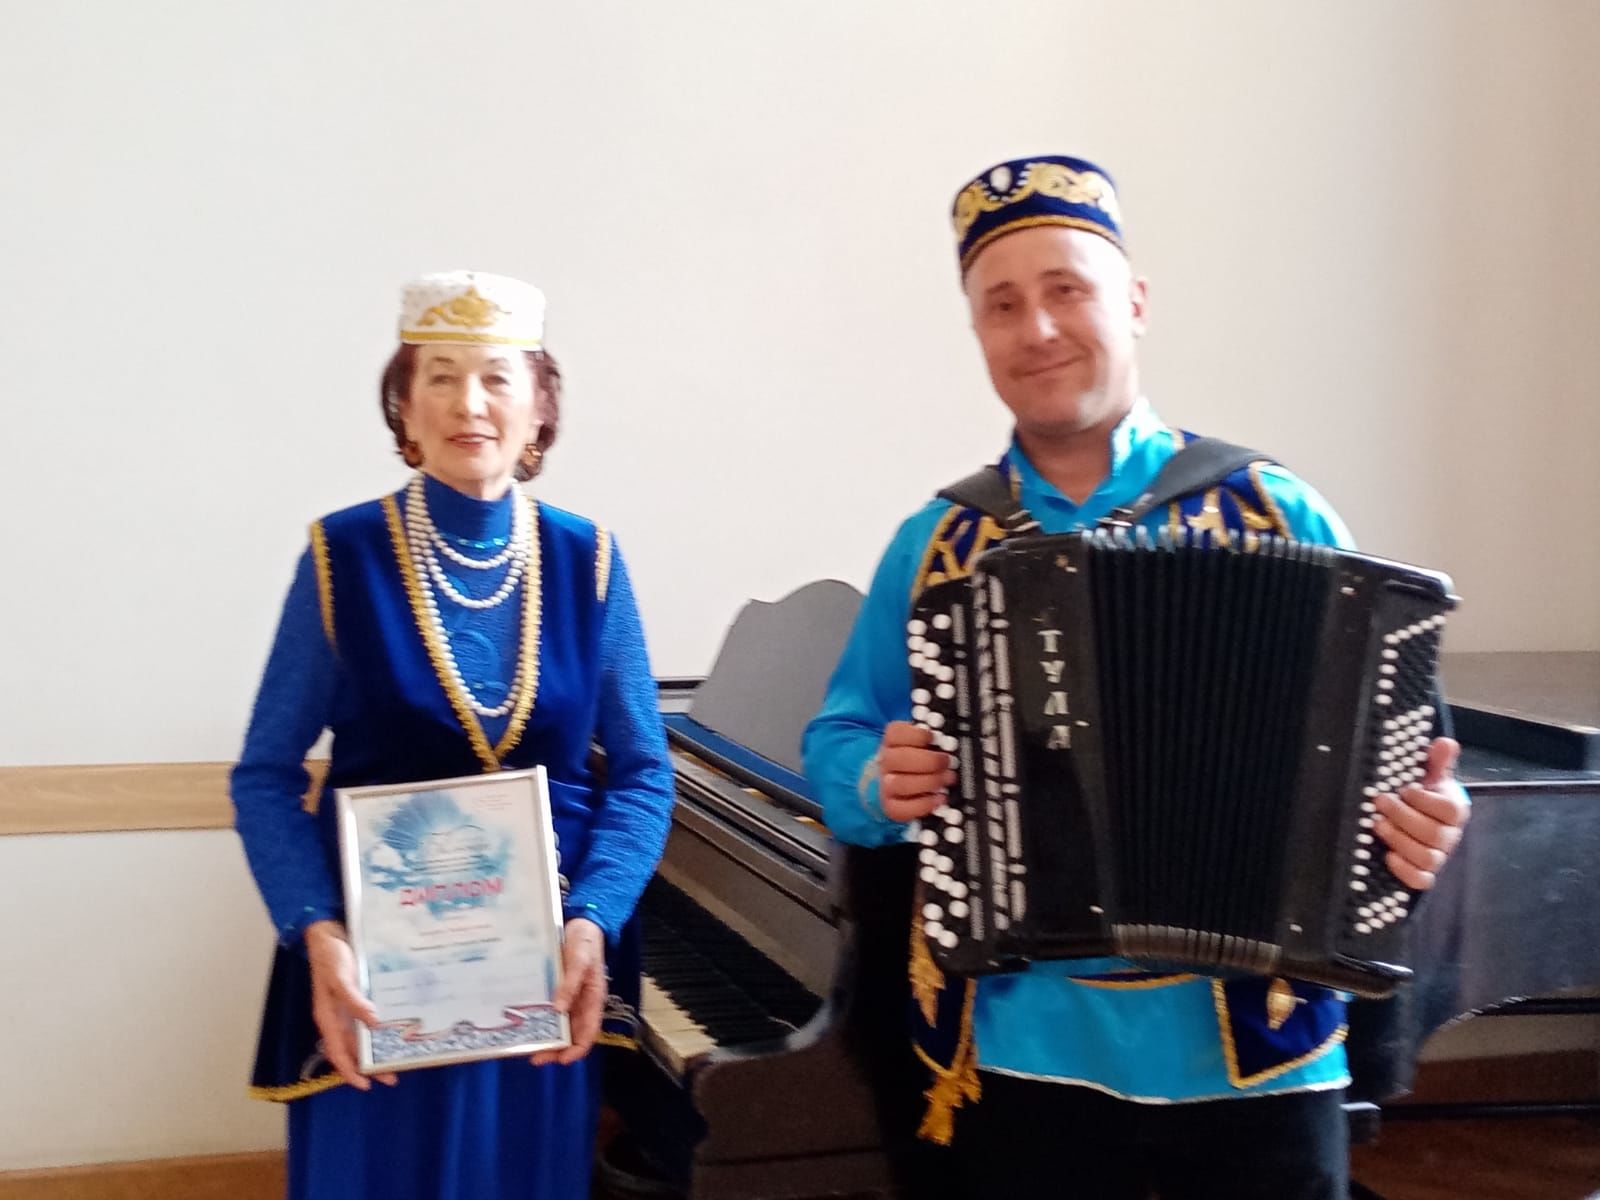 Участница фестиваля "Балкыш" из Буинска стала лауреатом в номинации "Сольное пение"